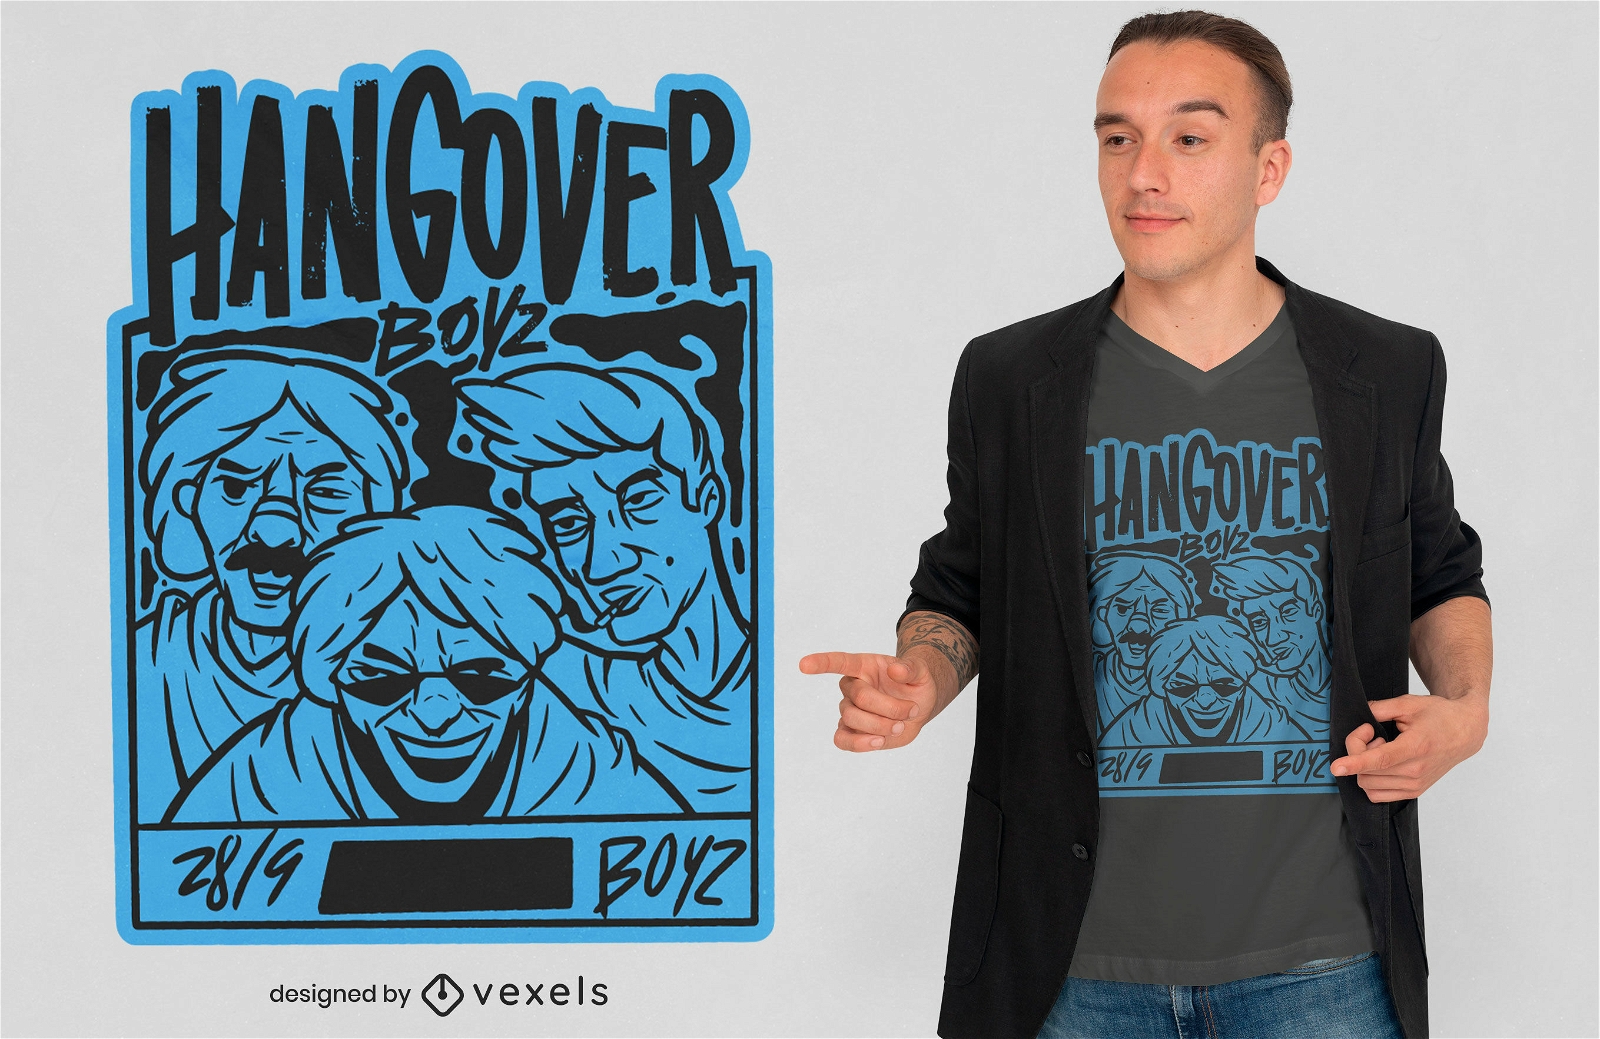 Hangover men cartoon t-shirt design